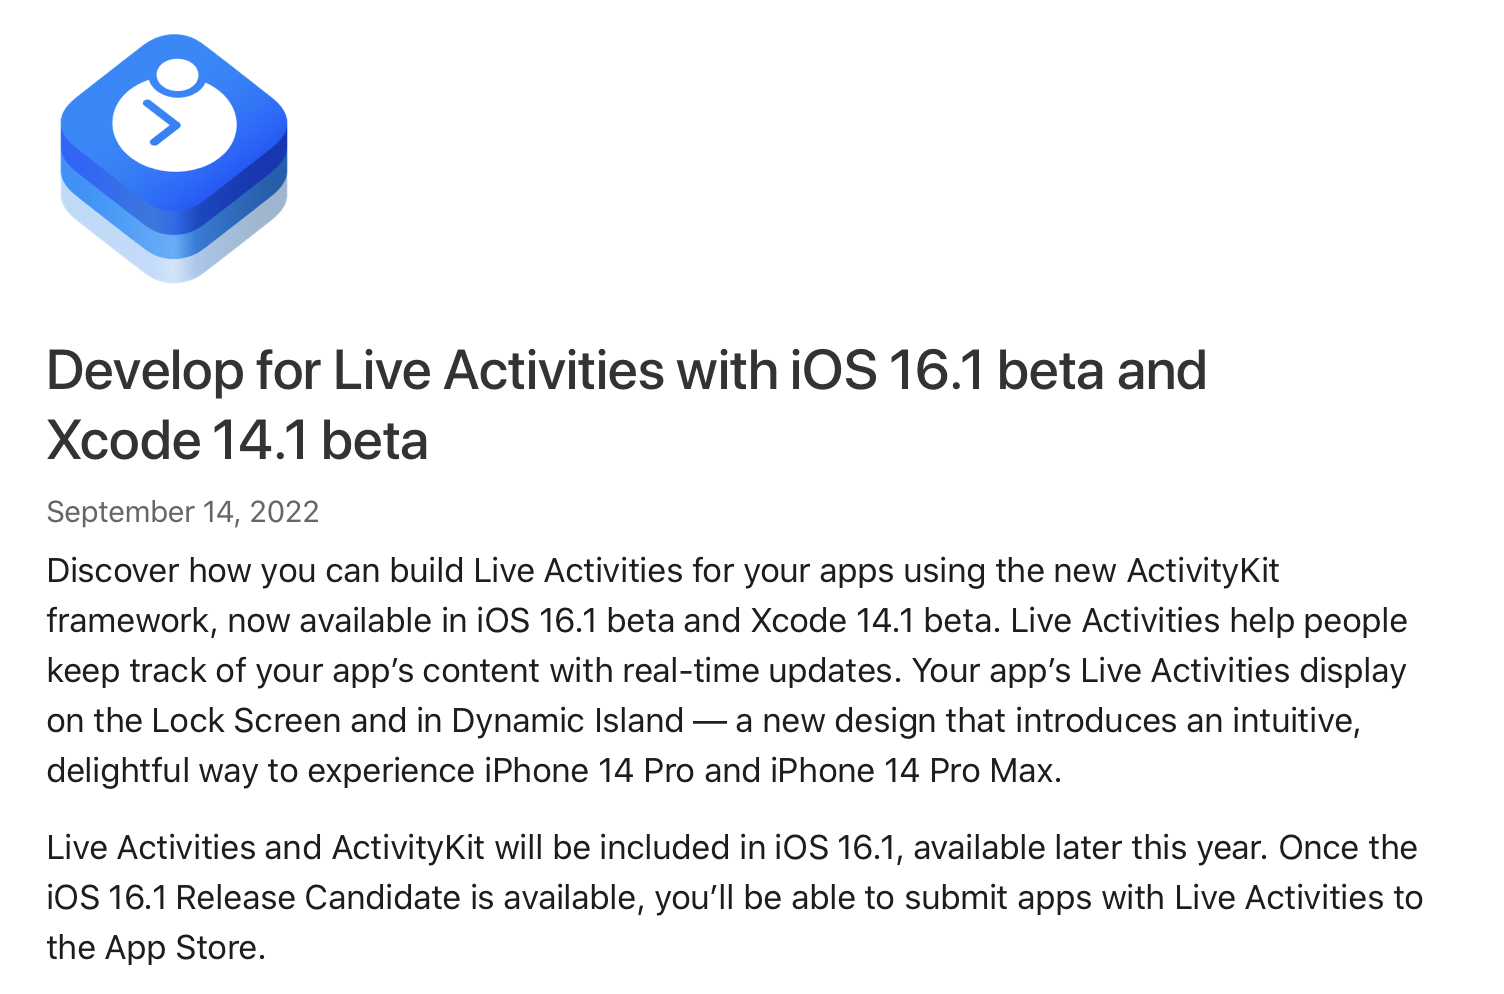 Live Activities API позволит встроить на экран блокировки процесс выполнения задачи и отслеживание её прогресса. Также на iPhone 14 Pro эта функция заиграет по-новому с уникальными анимациями и режимами отображения.